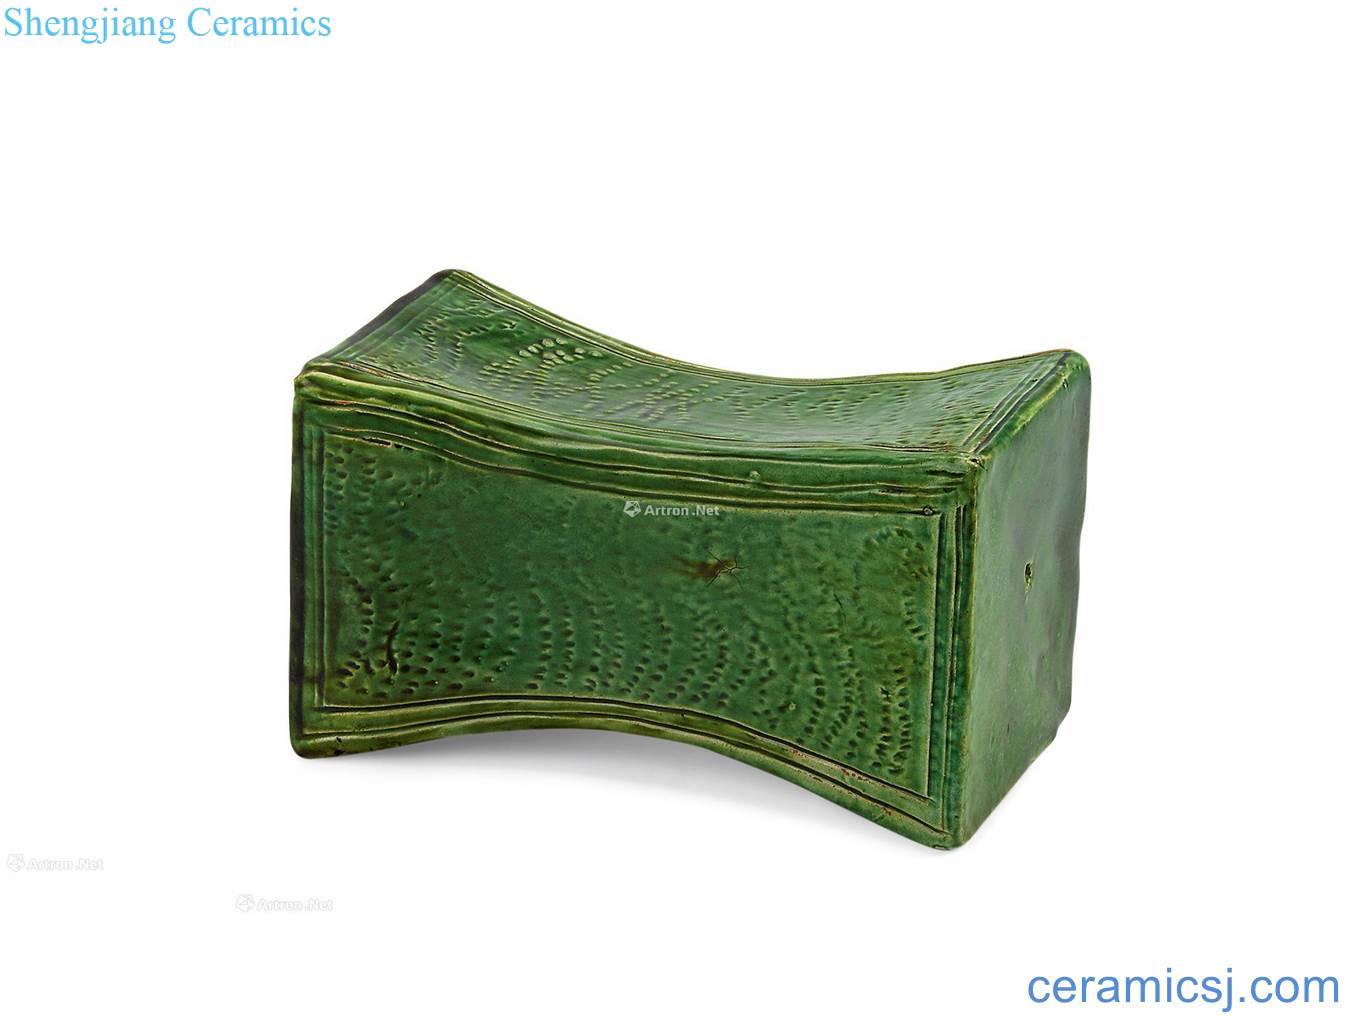 yuan Loins green glaze porcelain pillow